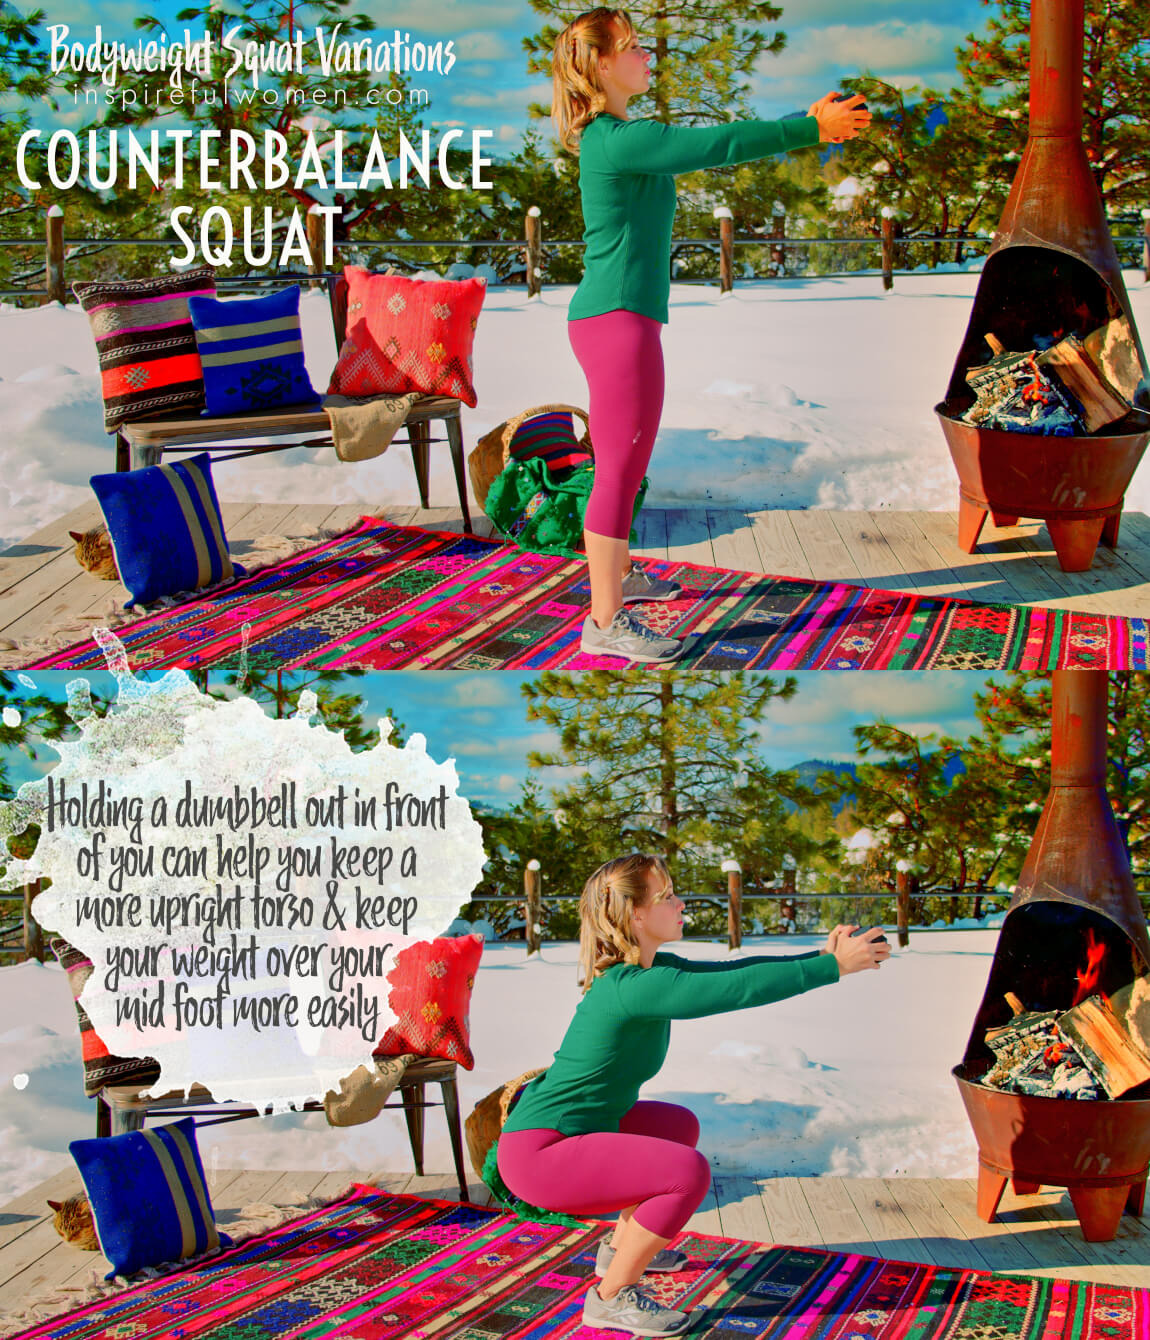 counterbalance-squat-bodyweight-gluteus-maximus-quadriceps-exercise-variation